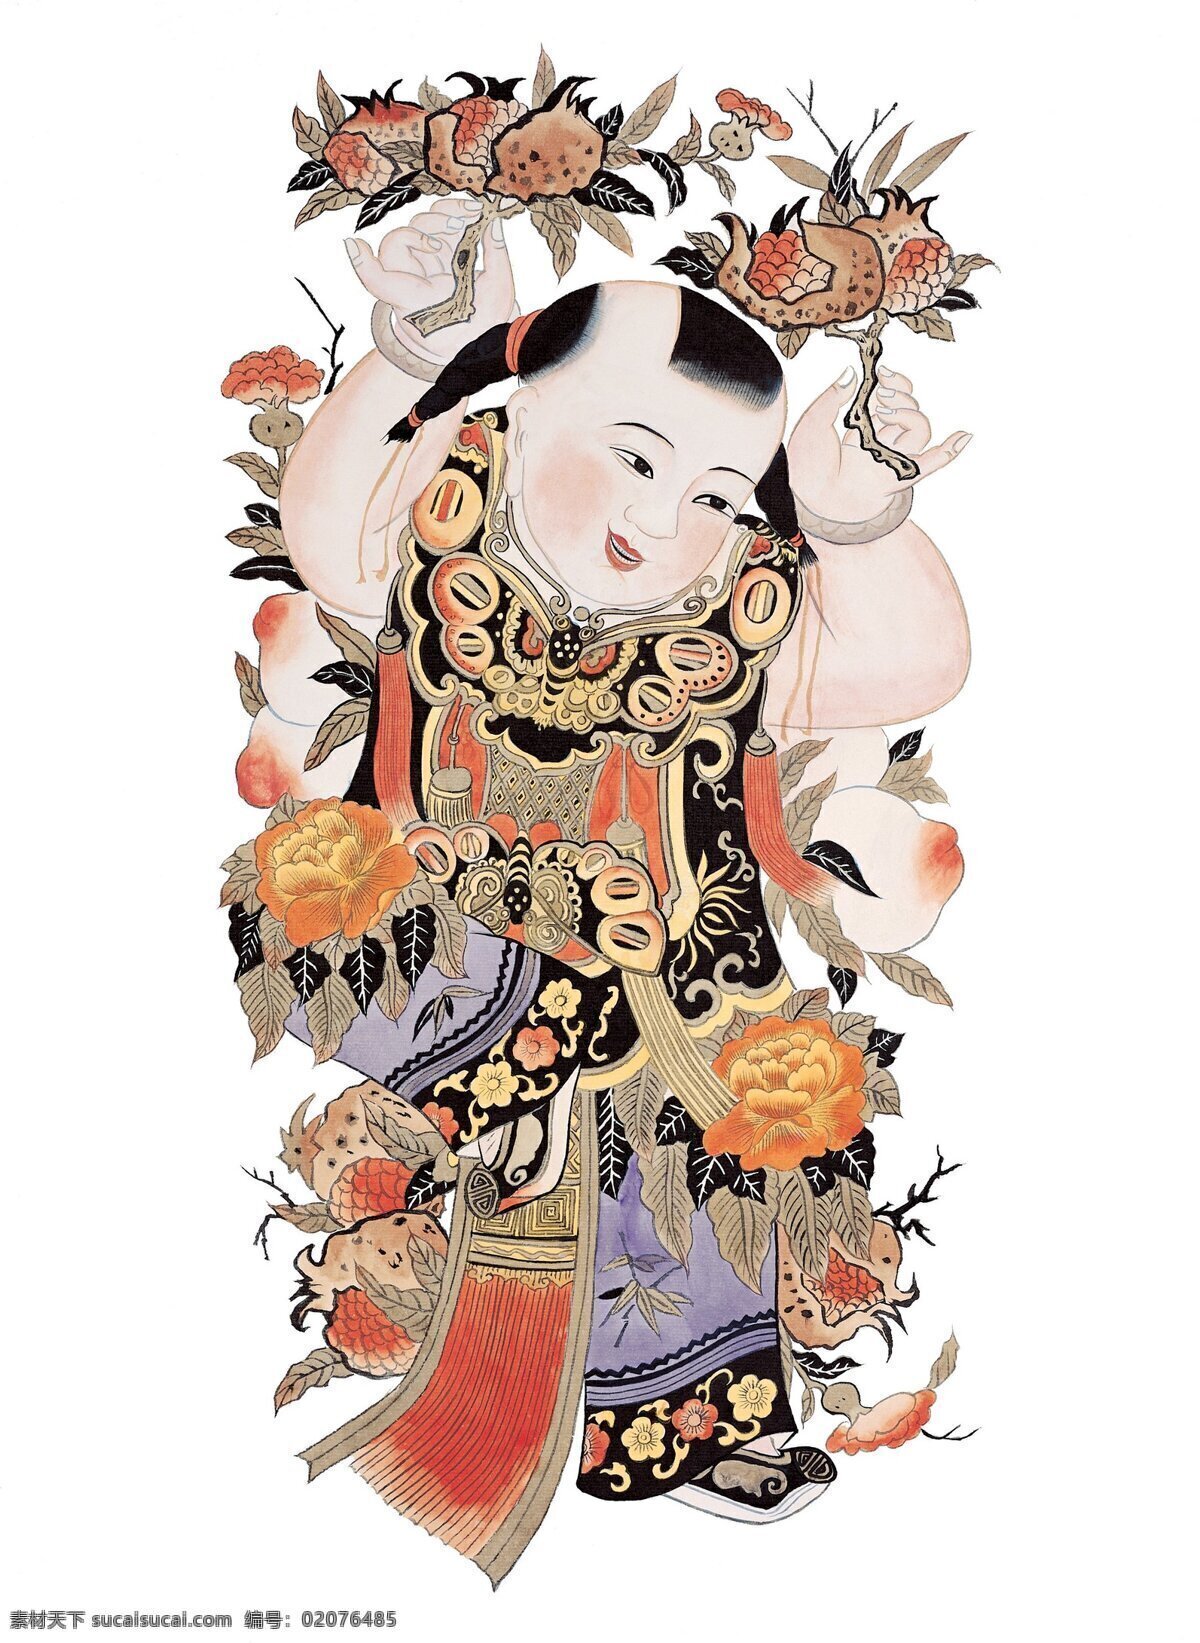 年画娃娃 门神图 传统门神 民间艺术 民俗艺术 节日 风俗 过年 绘画 年画 传统 民俗 门神 文化艺术 传统文化 绘画书法